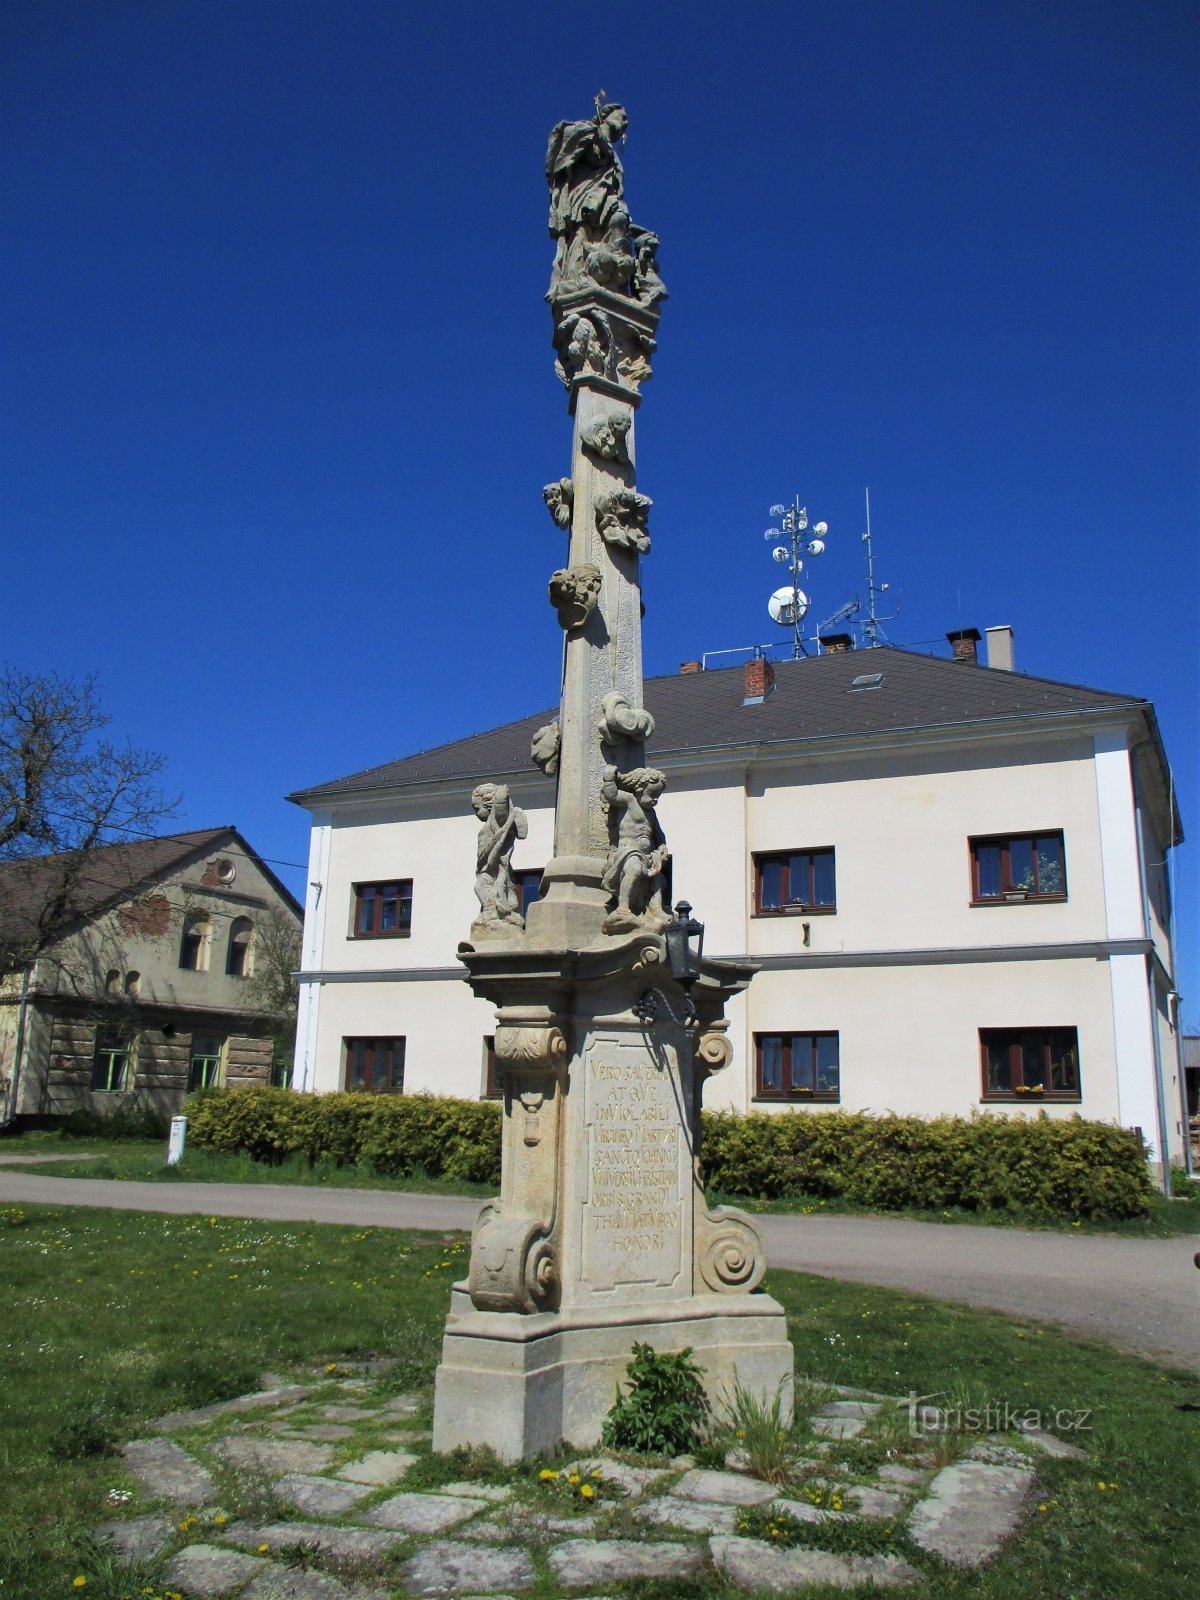 Egy oszlop Szent szoborral. Nepomuck János (Chotěborky, 20.4.2020. április XNUMX.)